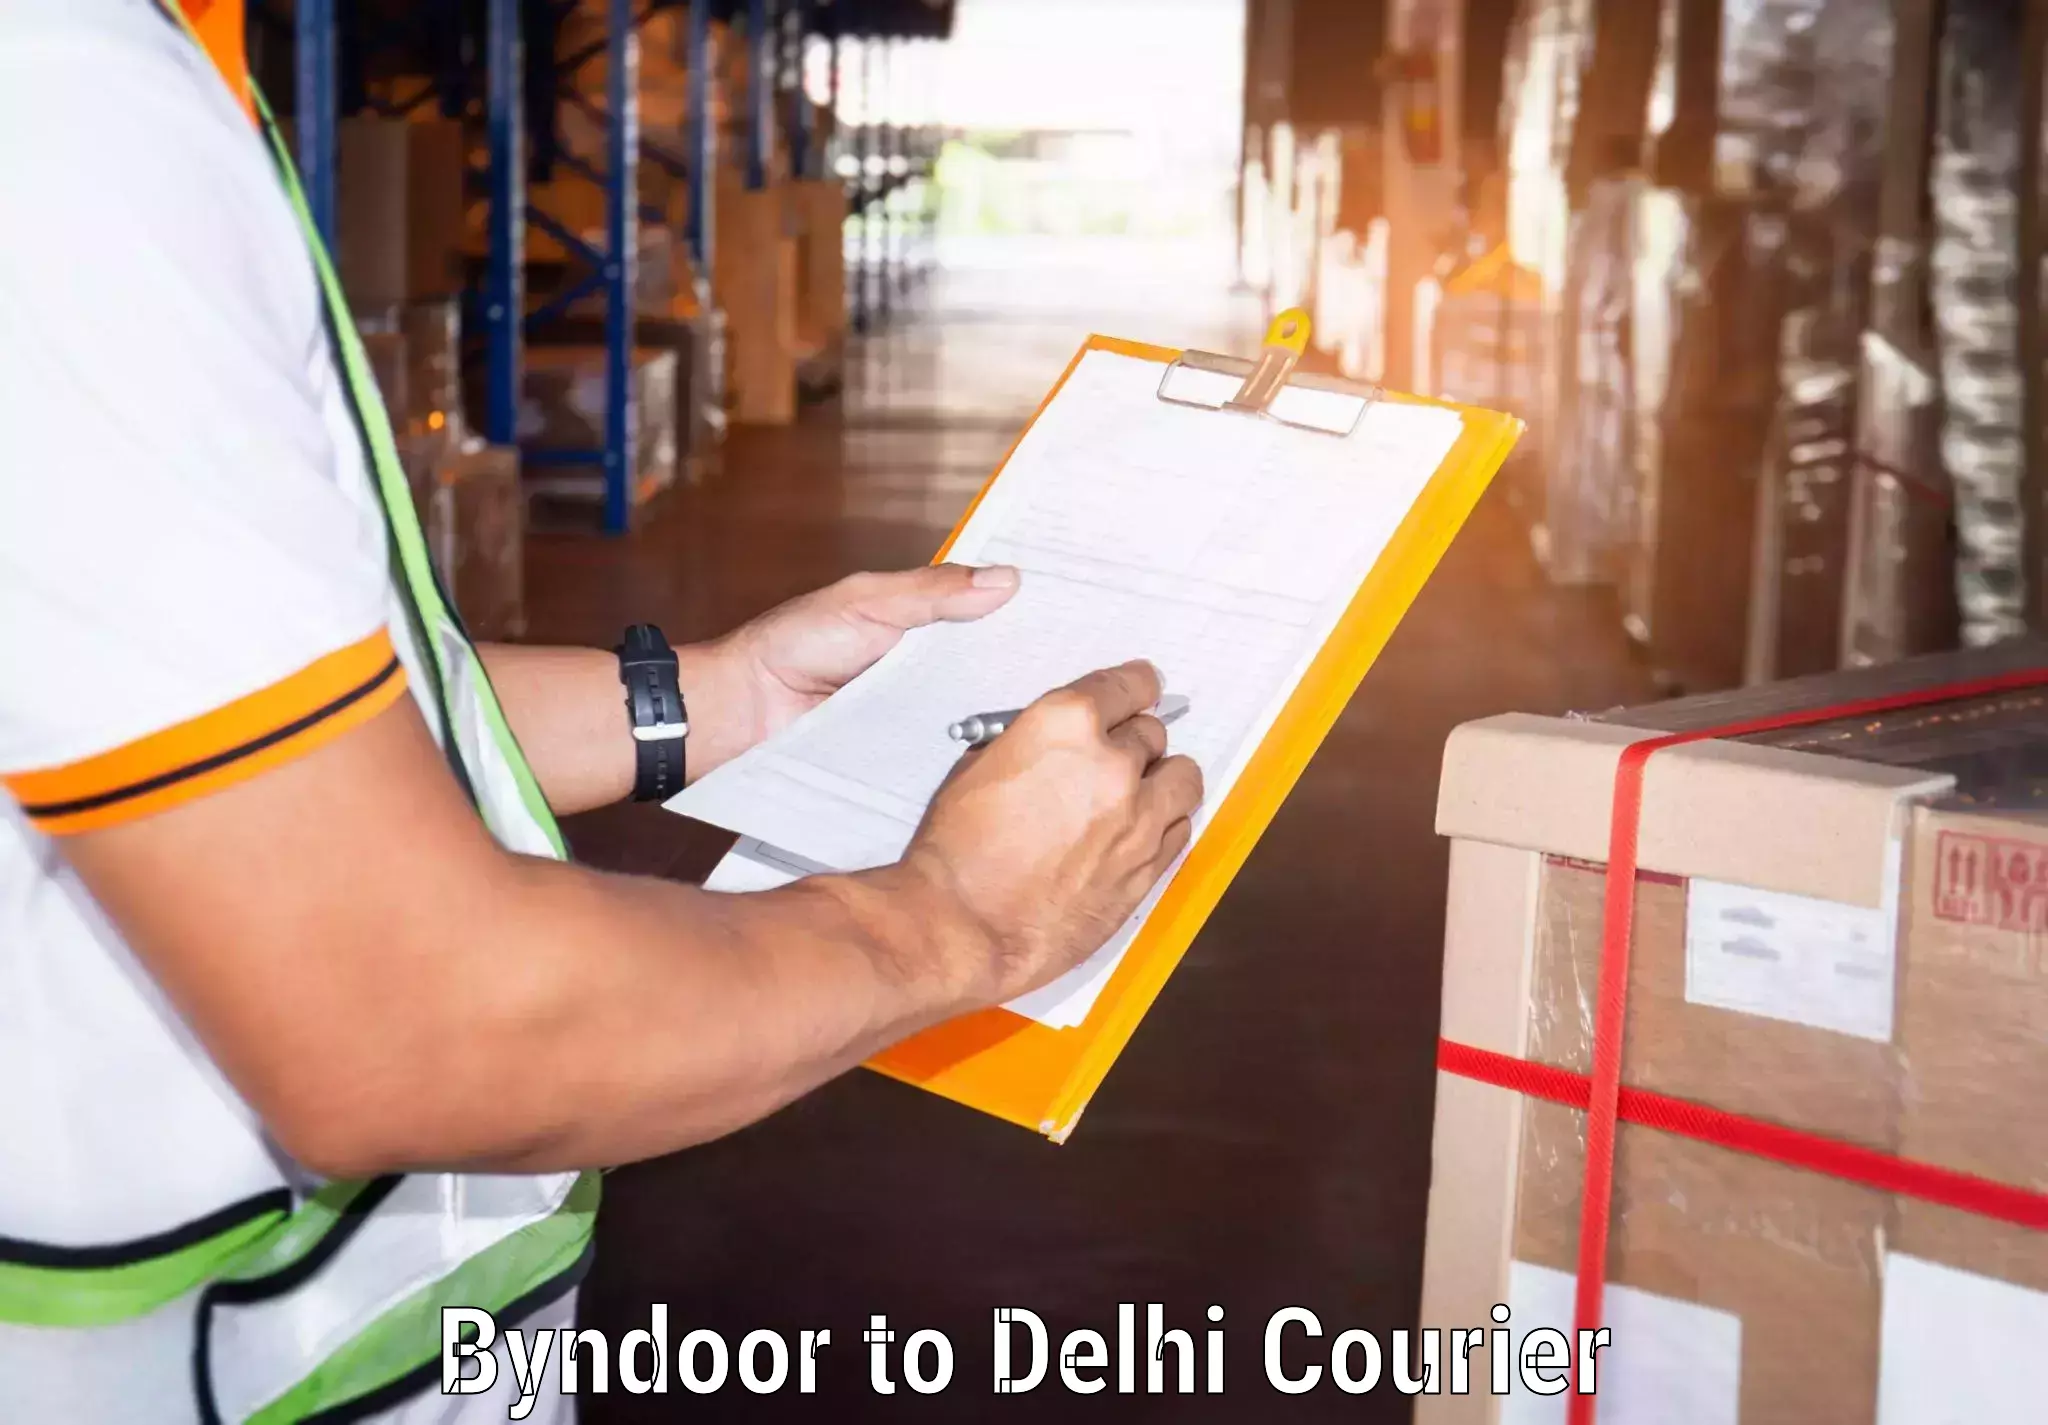 24/7 courier service Byndoor to Ashok Vihar